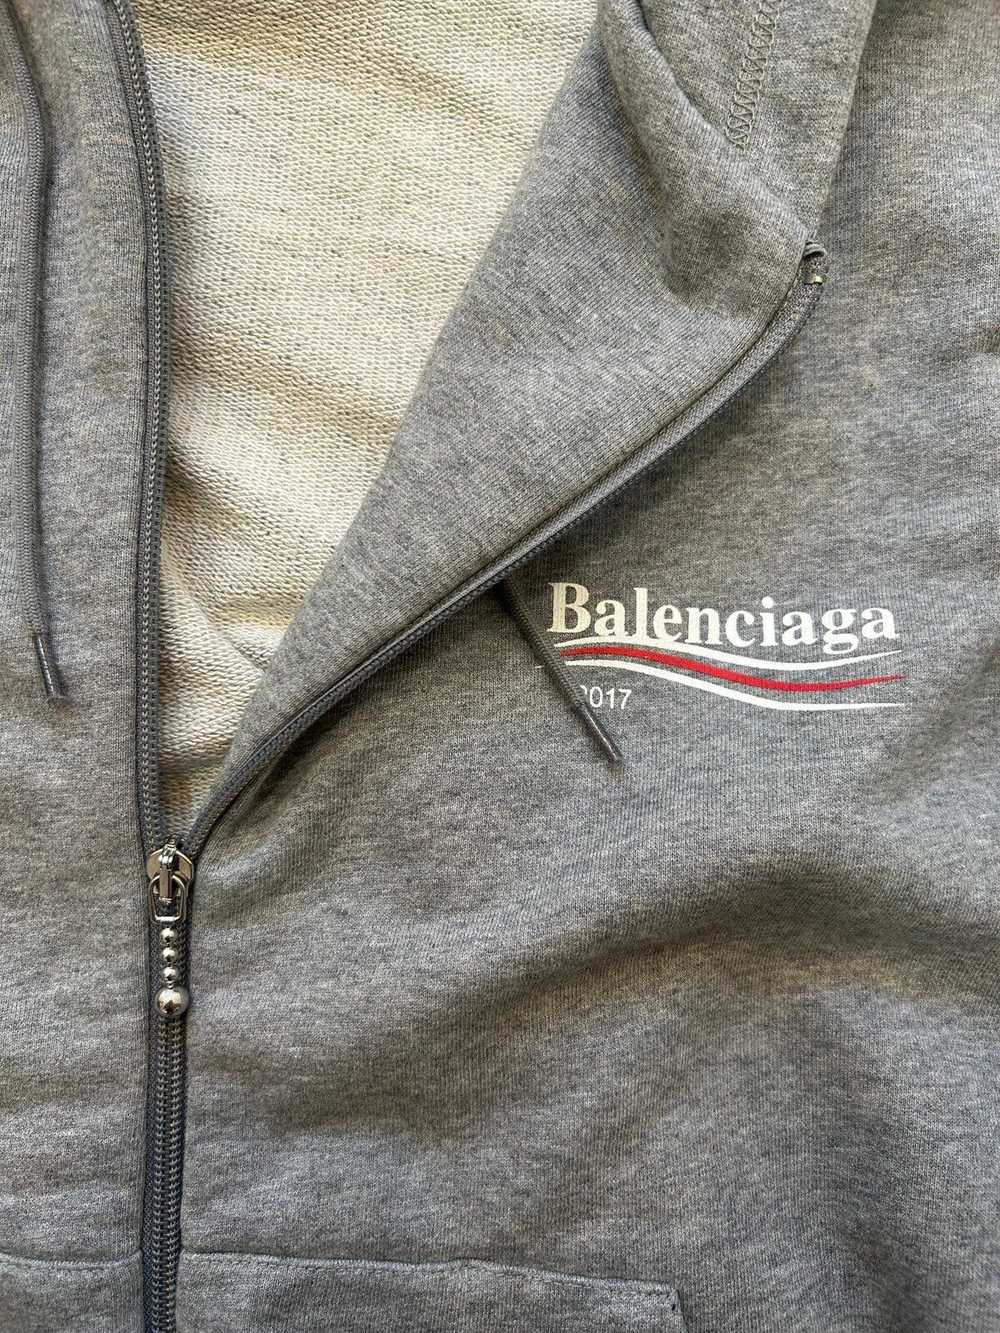 Balenciaga BALENCIAGA CAMPAIGN 2017 ZIP UP - image 3